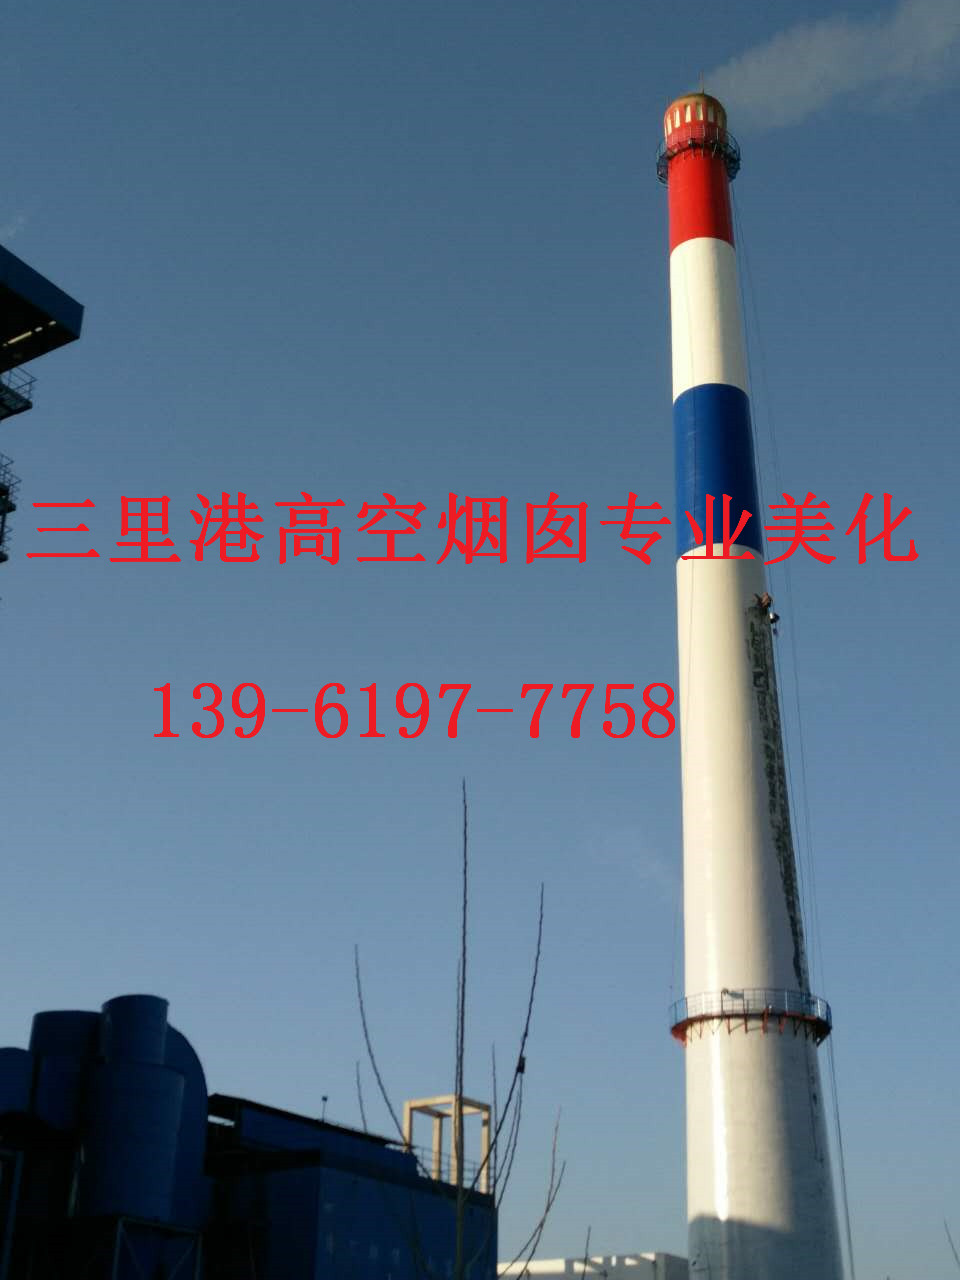 桂平市烟囱刷航标工程工程质量好